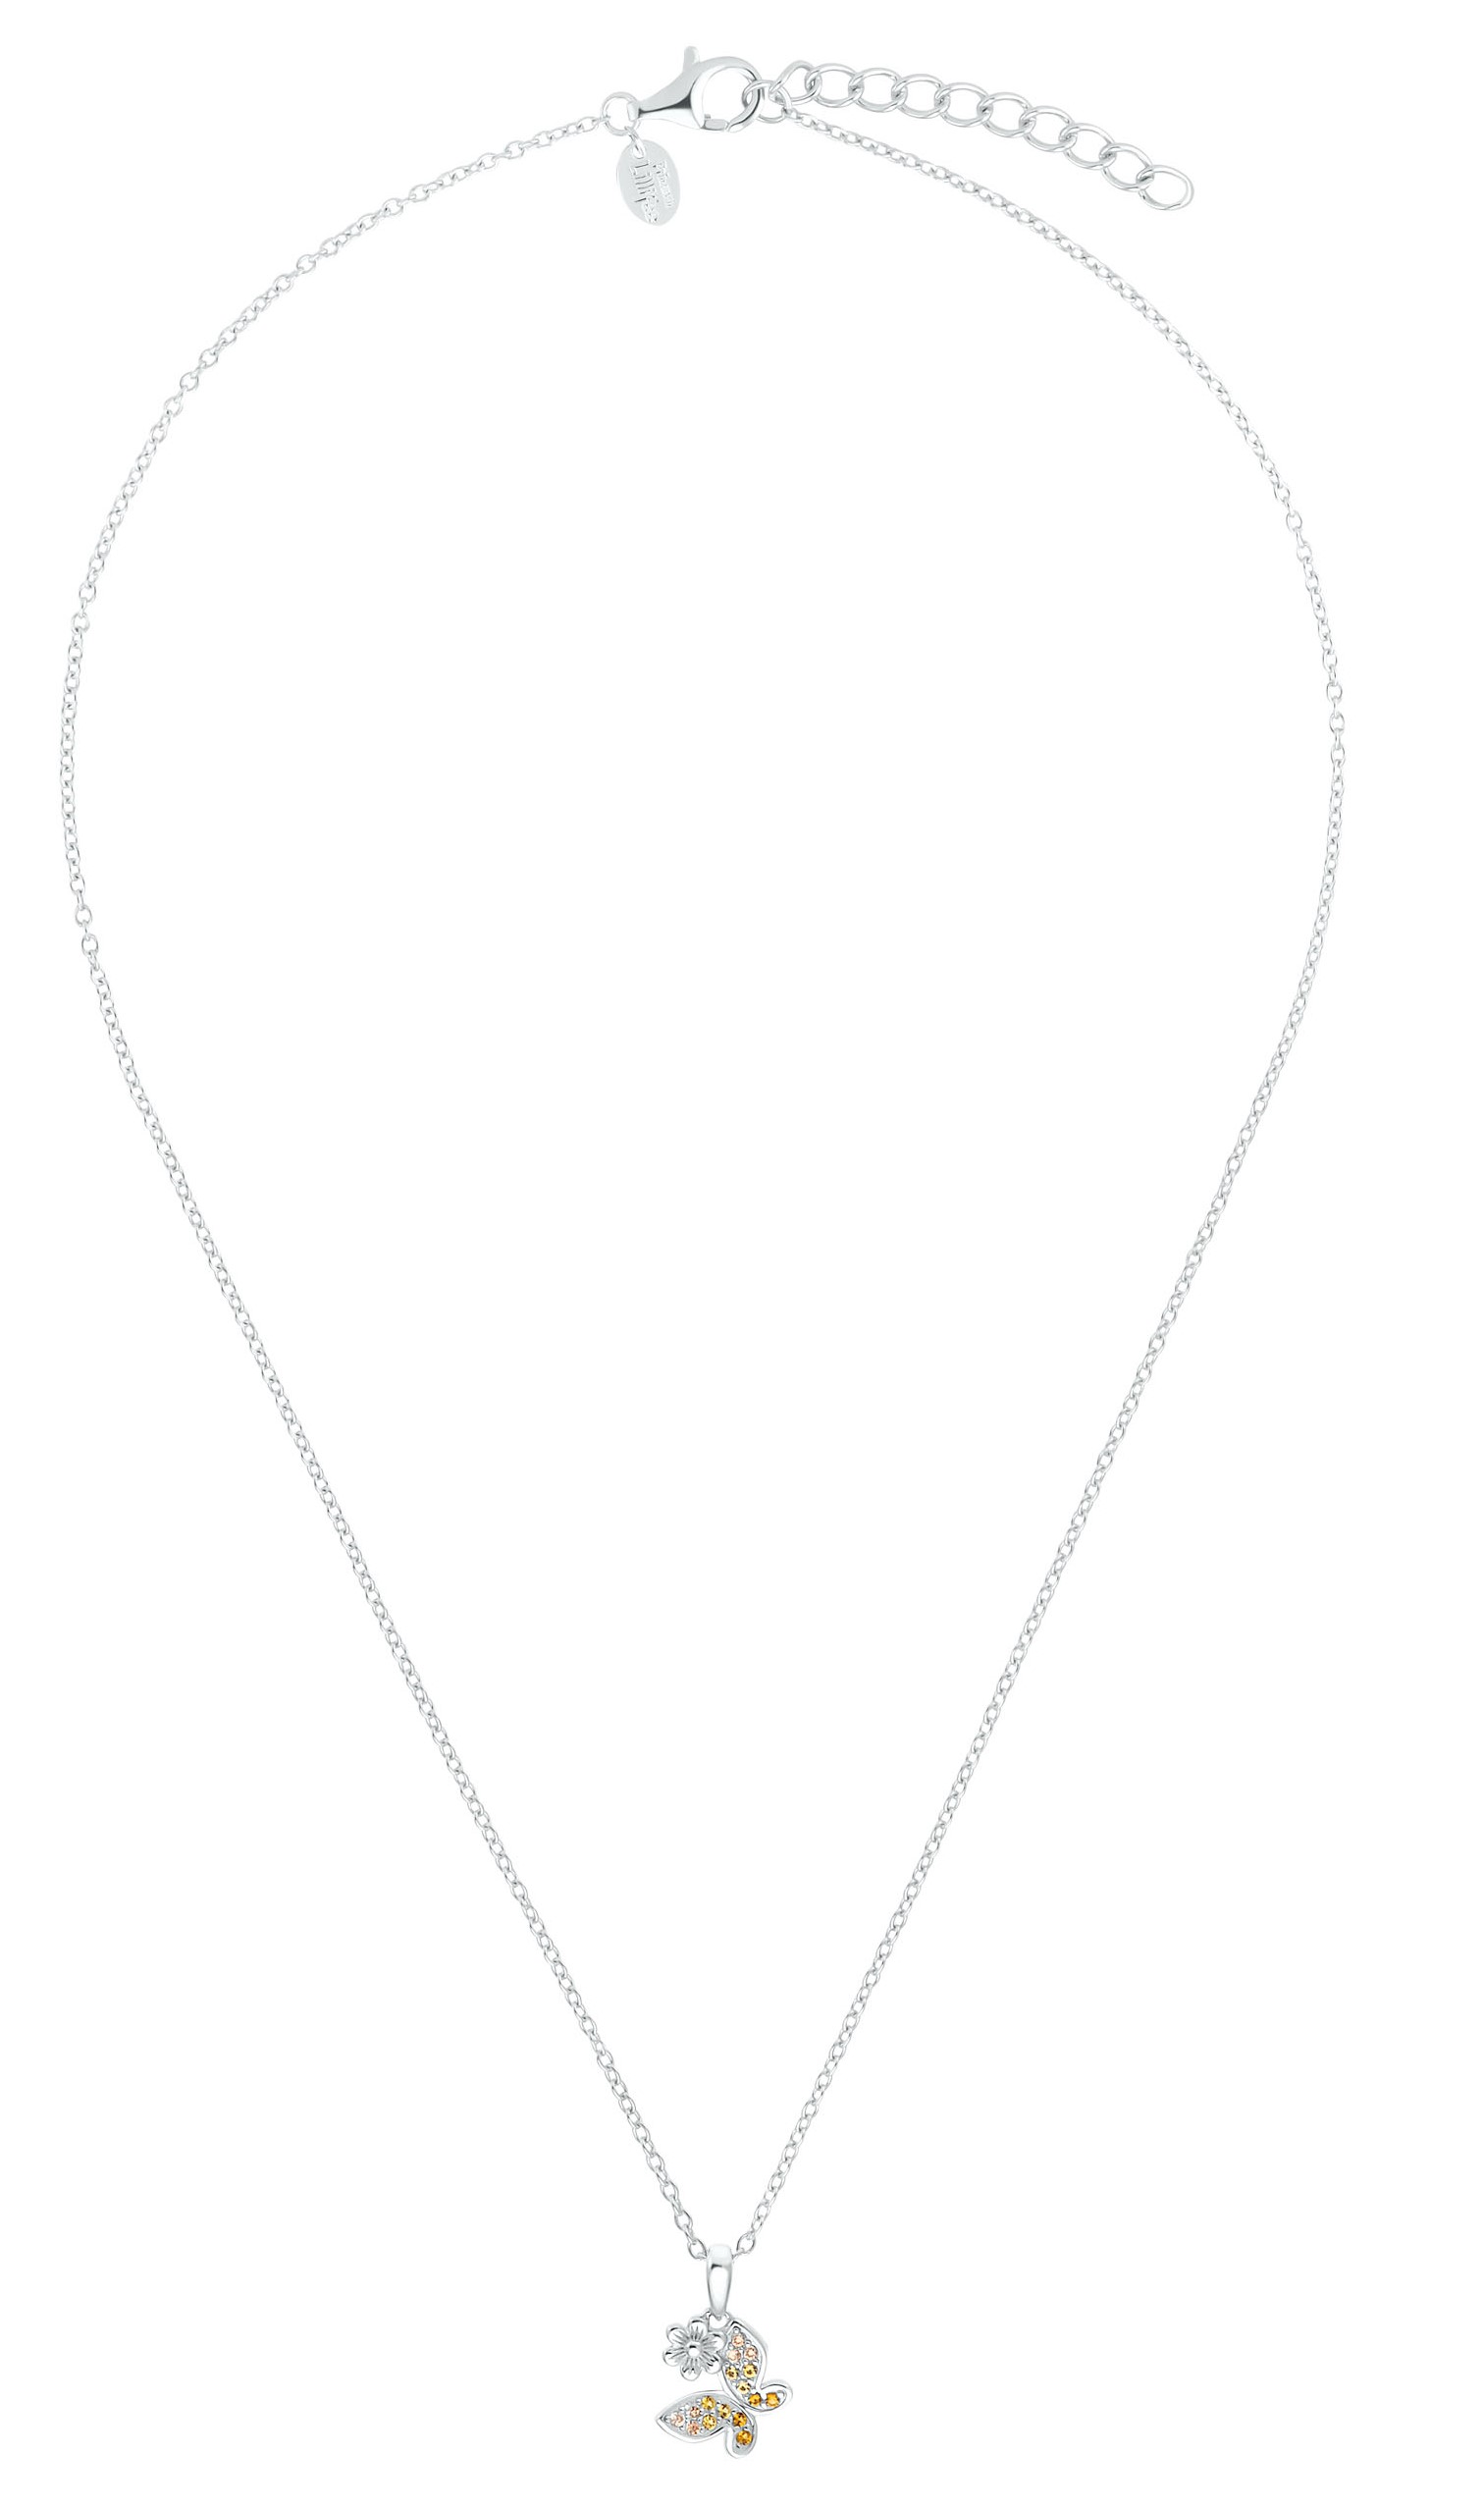 Lillifee Halskette 2035991 Silber 925/- mit Anhänger Schmetterling und Blüte Zirkonia apricot gelb